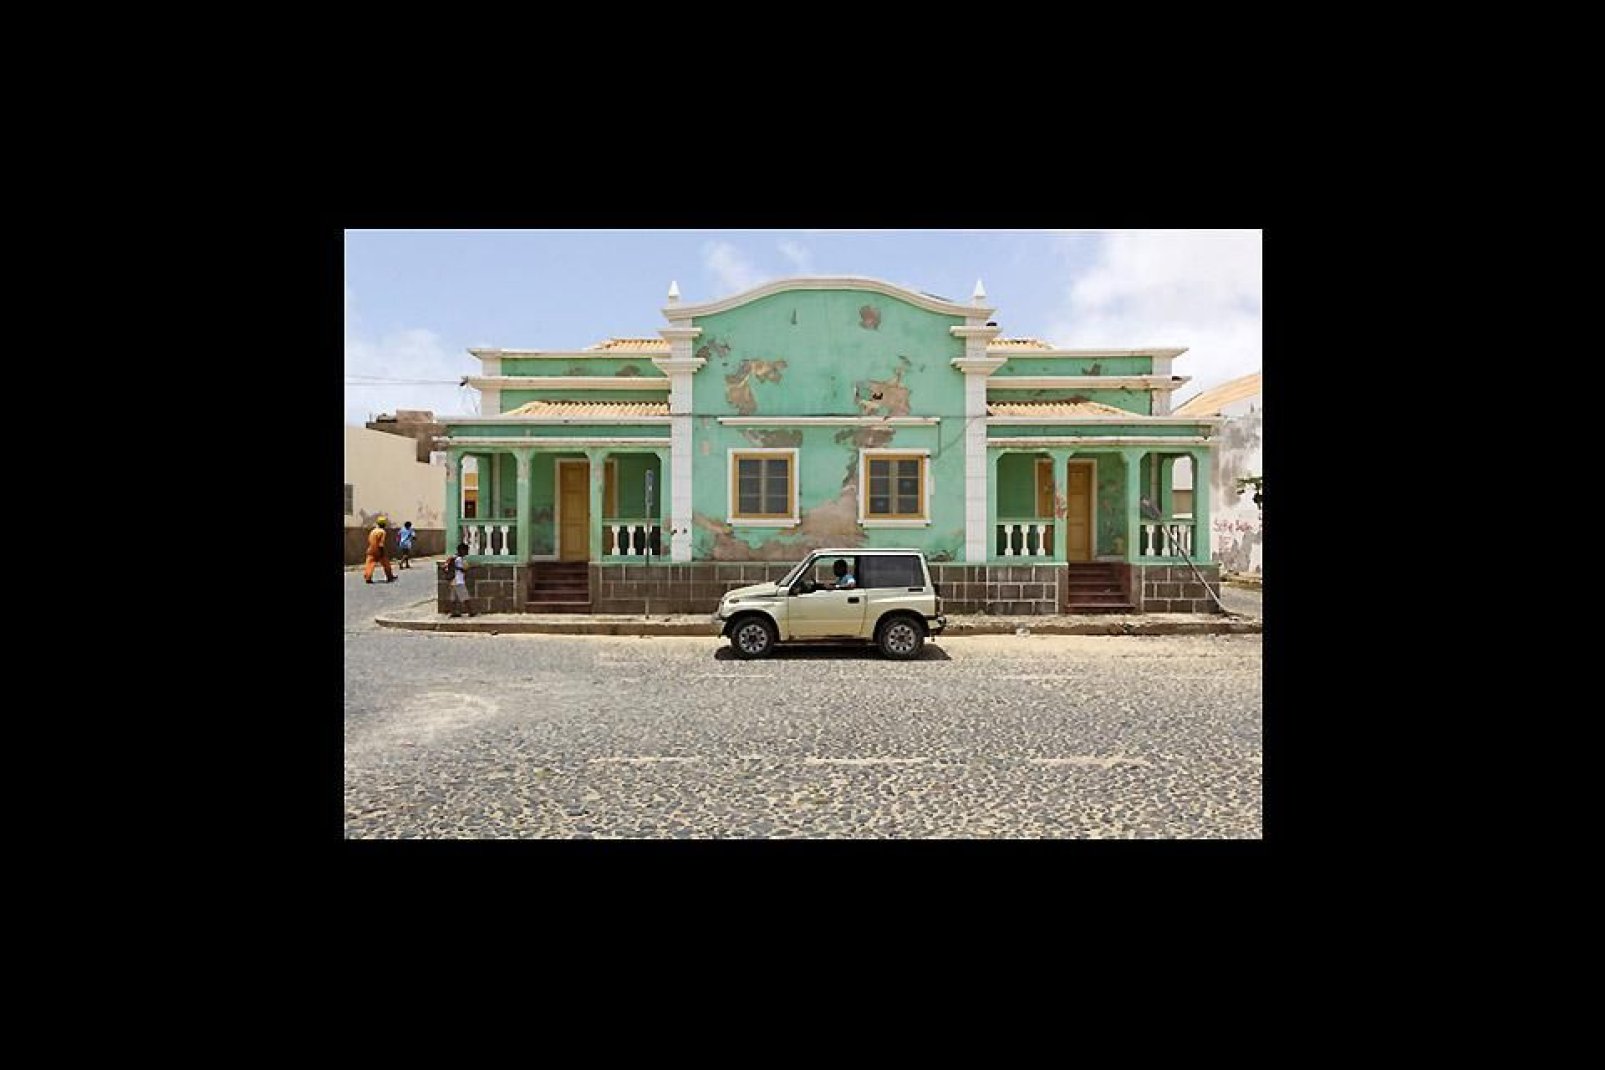 Gli edifici conservano i colori brillanti tipici di Capo Verde, ma il loro stato di manutenzione risulta spesso pietoso.